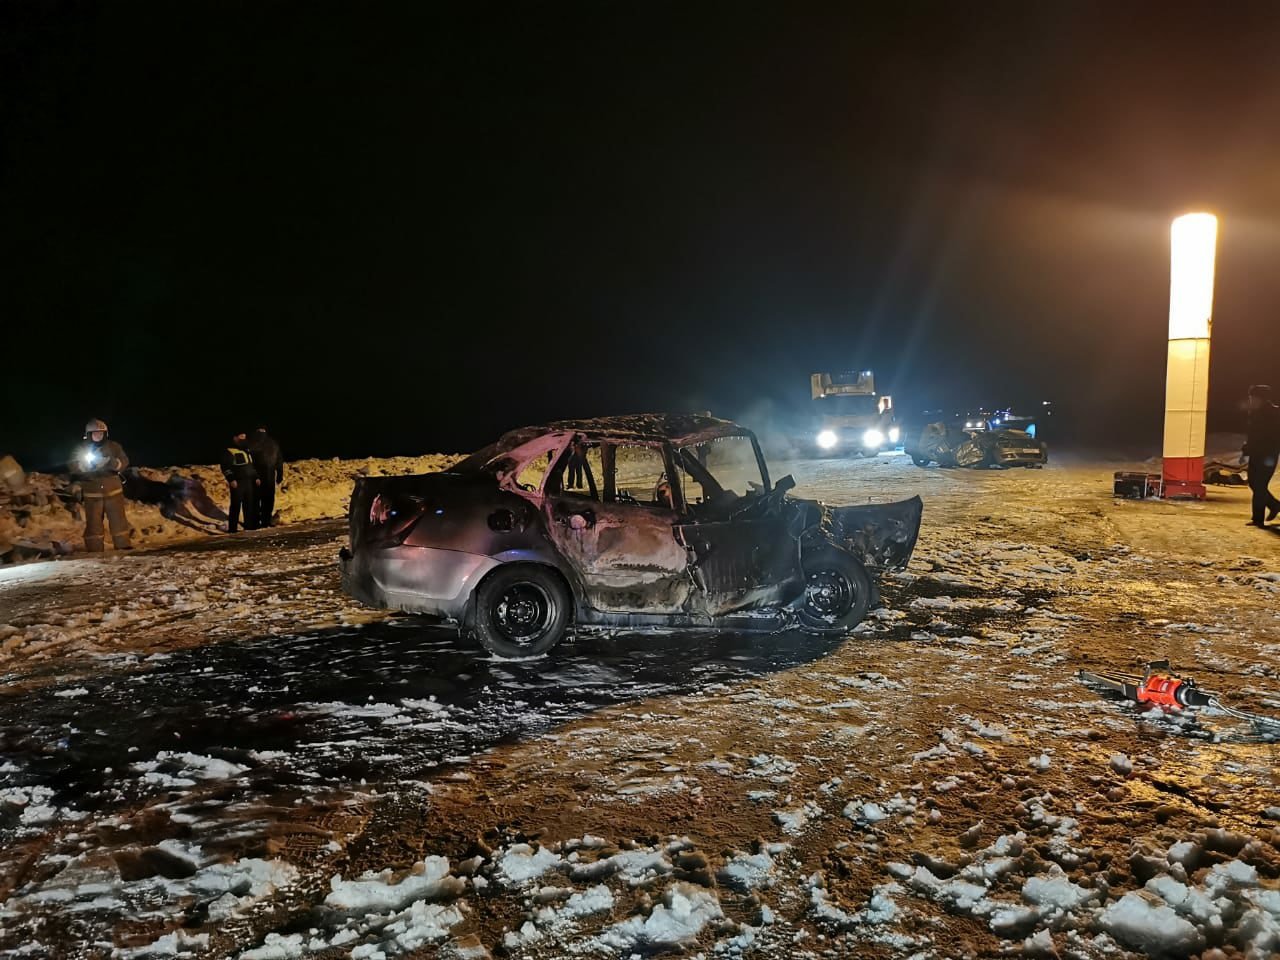 

«Гранта» сгорела после аварии с иномаркой в Удмуртии: 2 человека погибли

